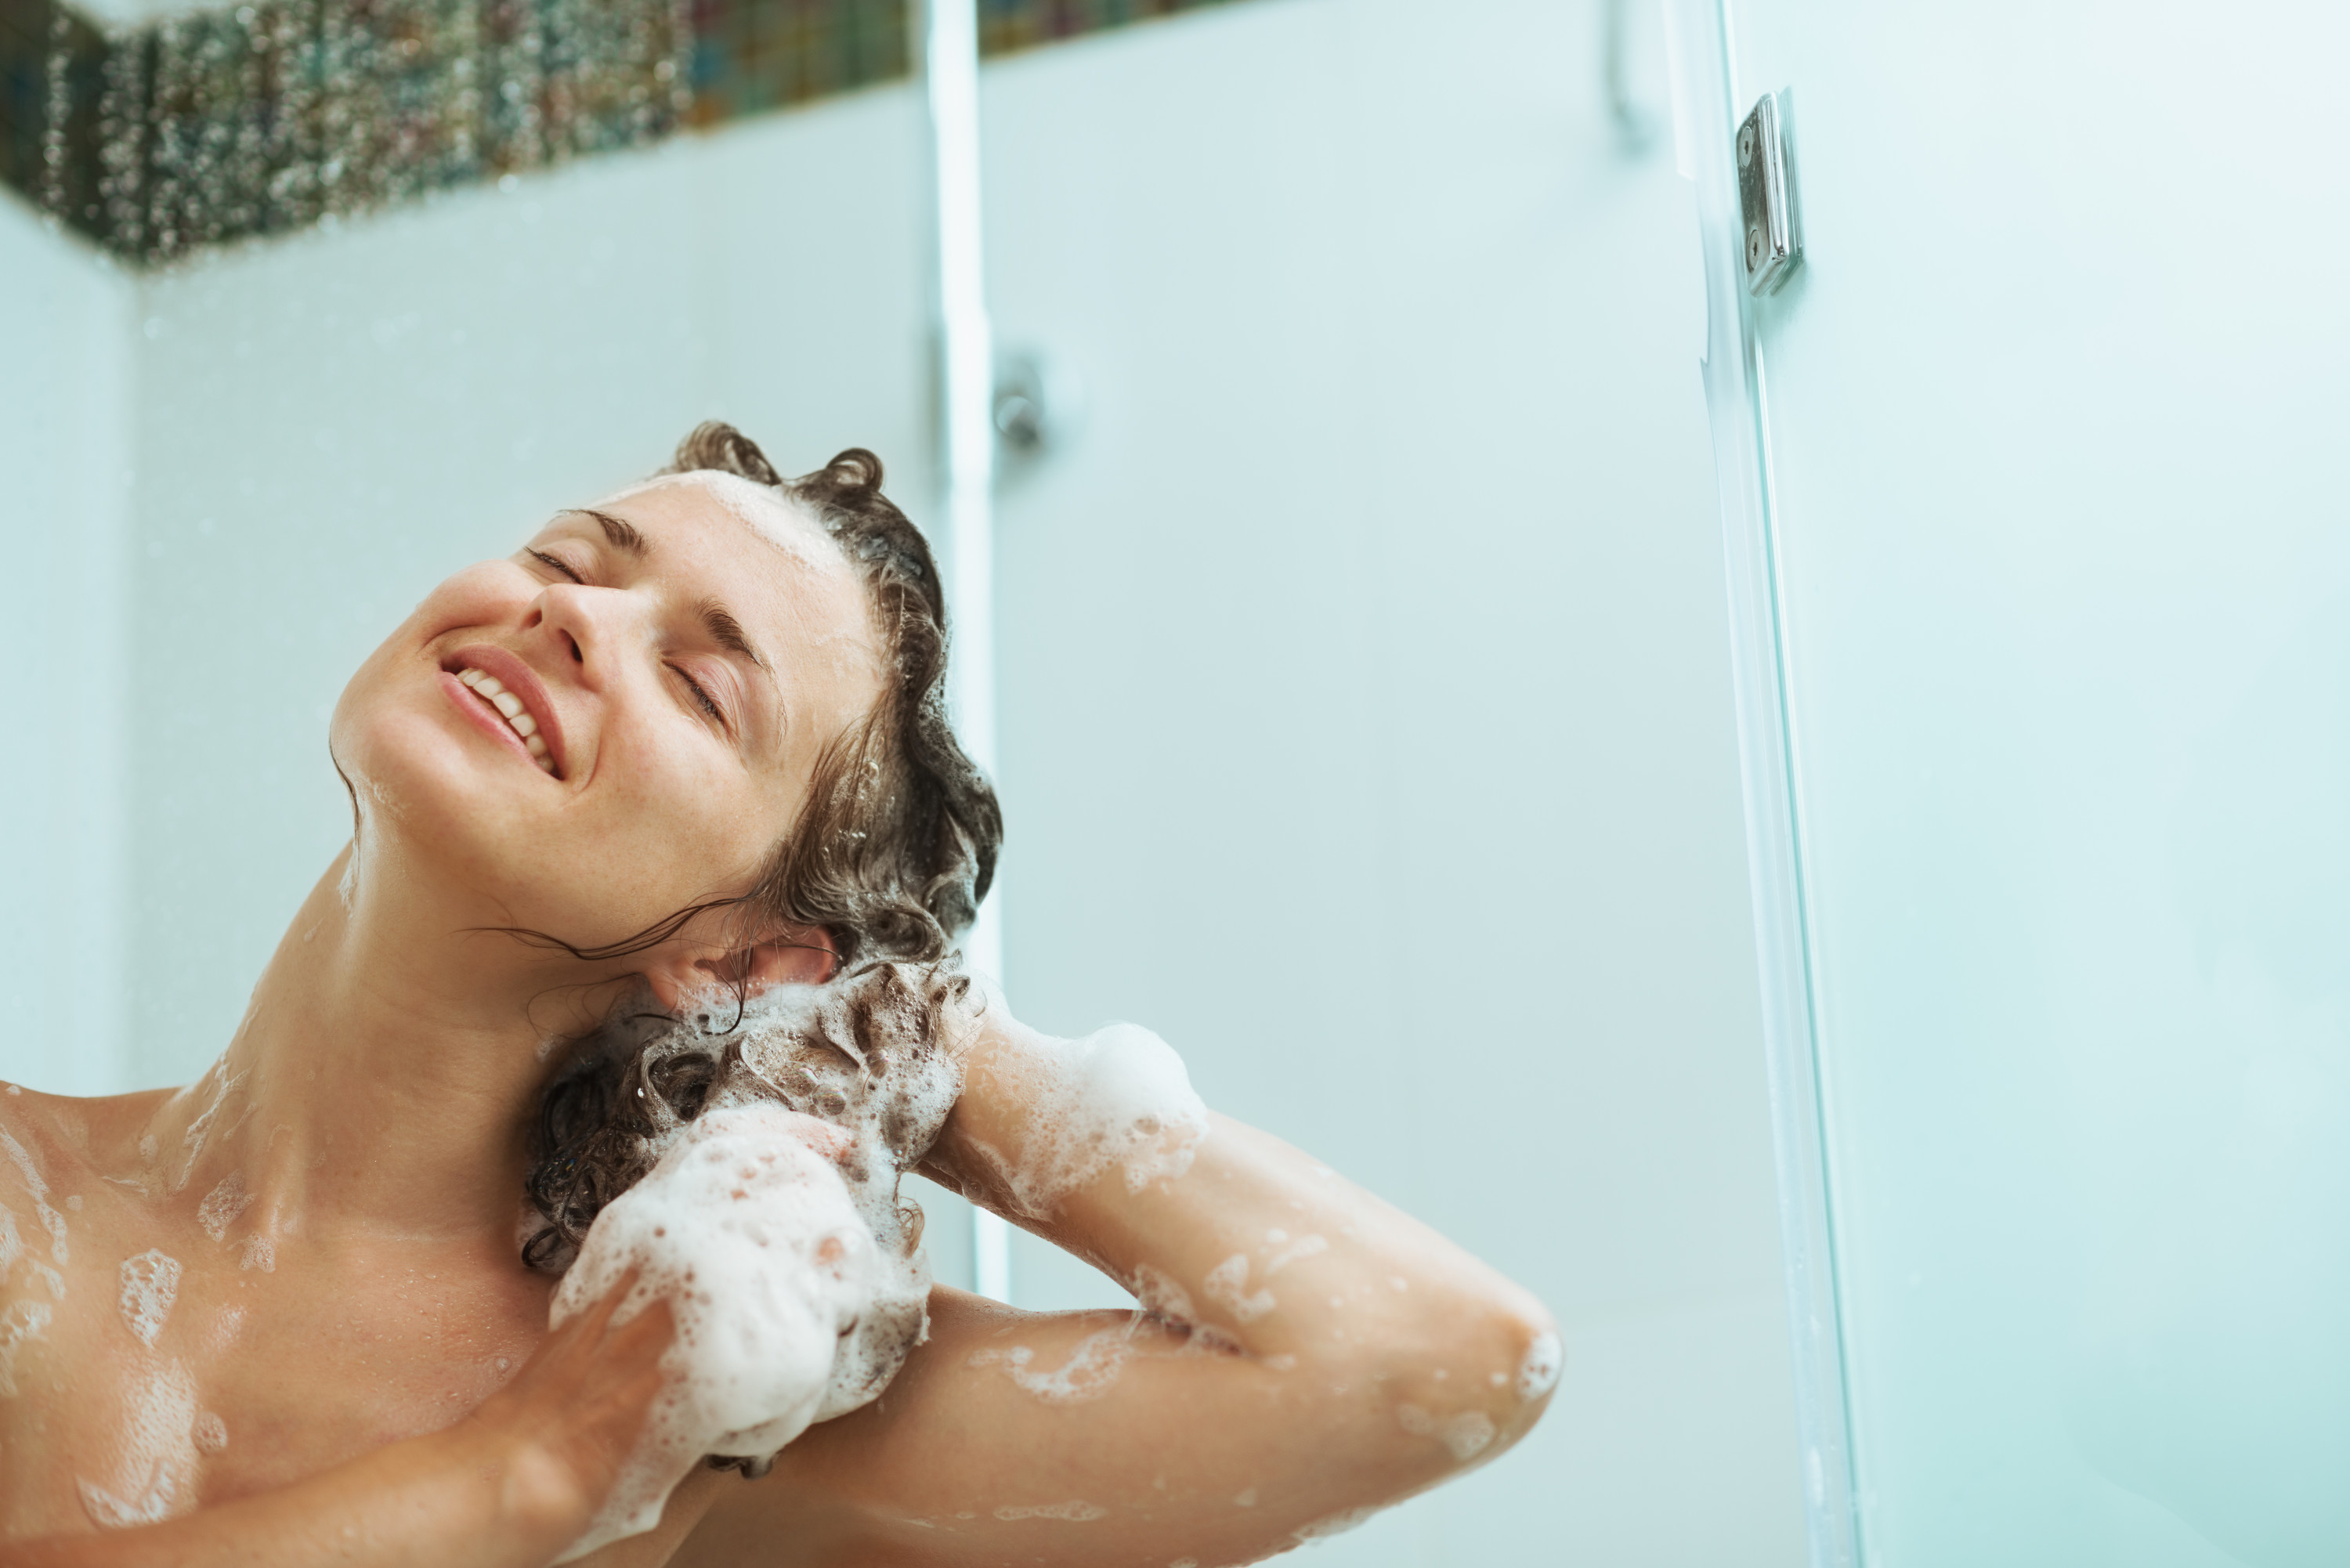 Дочка мылась в душе. Девочка моется. Моется в душе. Мытье волос. Фотосессия в душе.